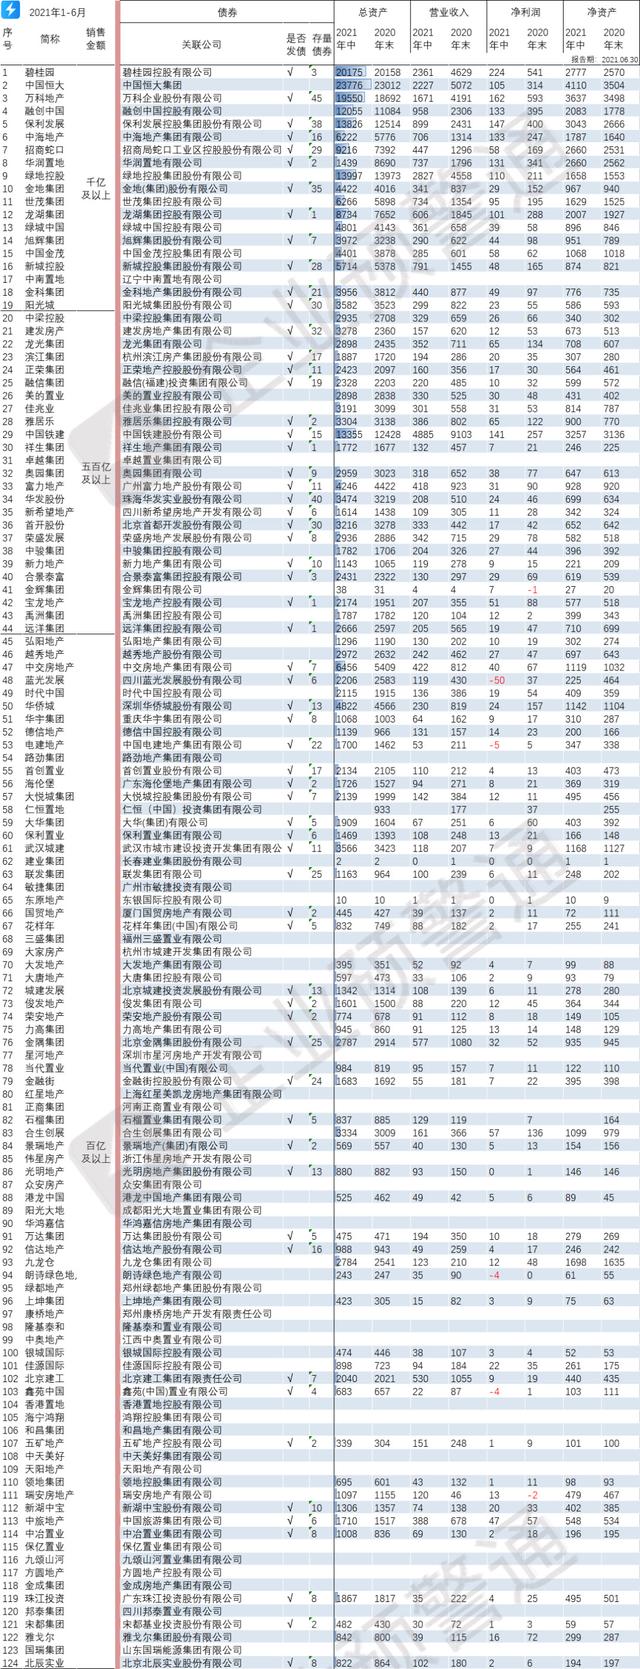 中国房企负债一览表「上市房企负债榜」